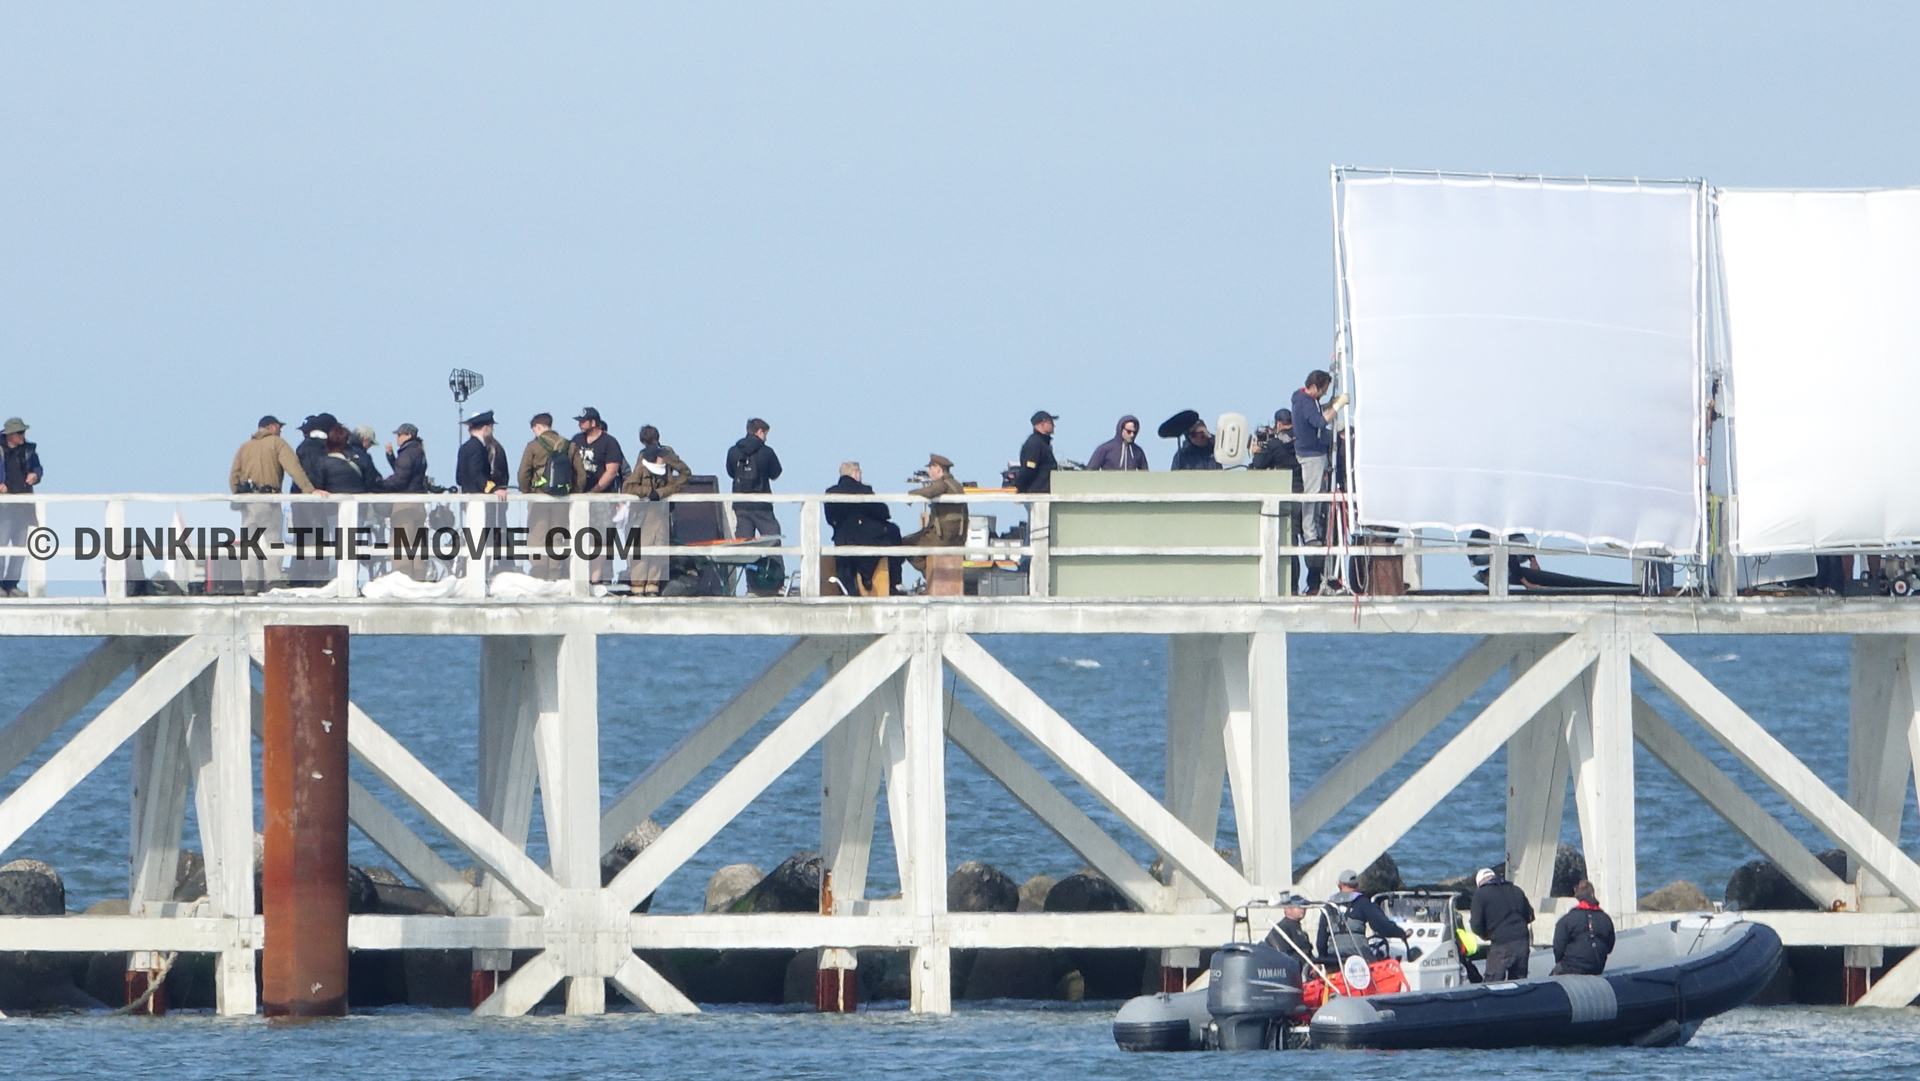 Fotos con cielo azul, muelle del ESTE, Kenneth Branagh, equipo técnica, zodiaco,  durante el rodaje de la película Dunkerque de Nolan